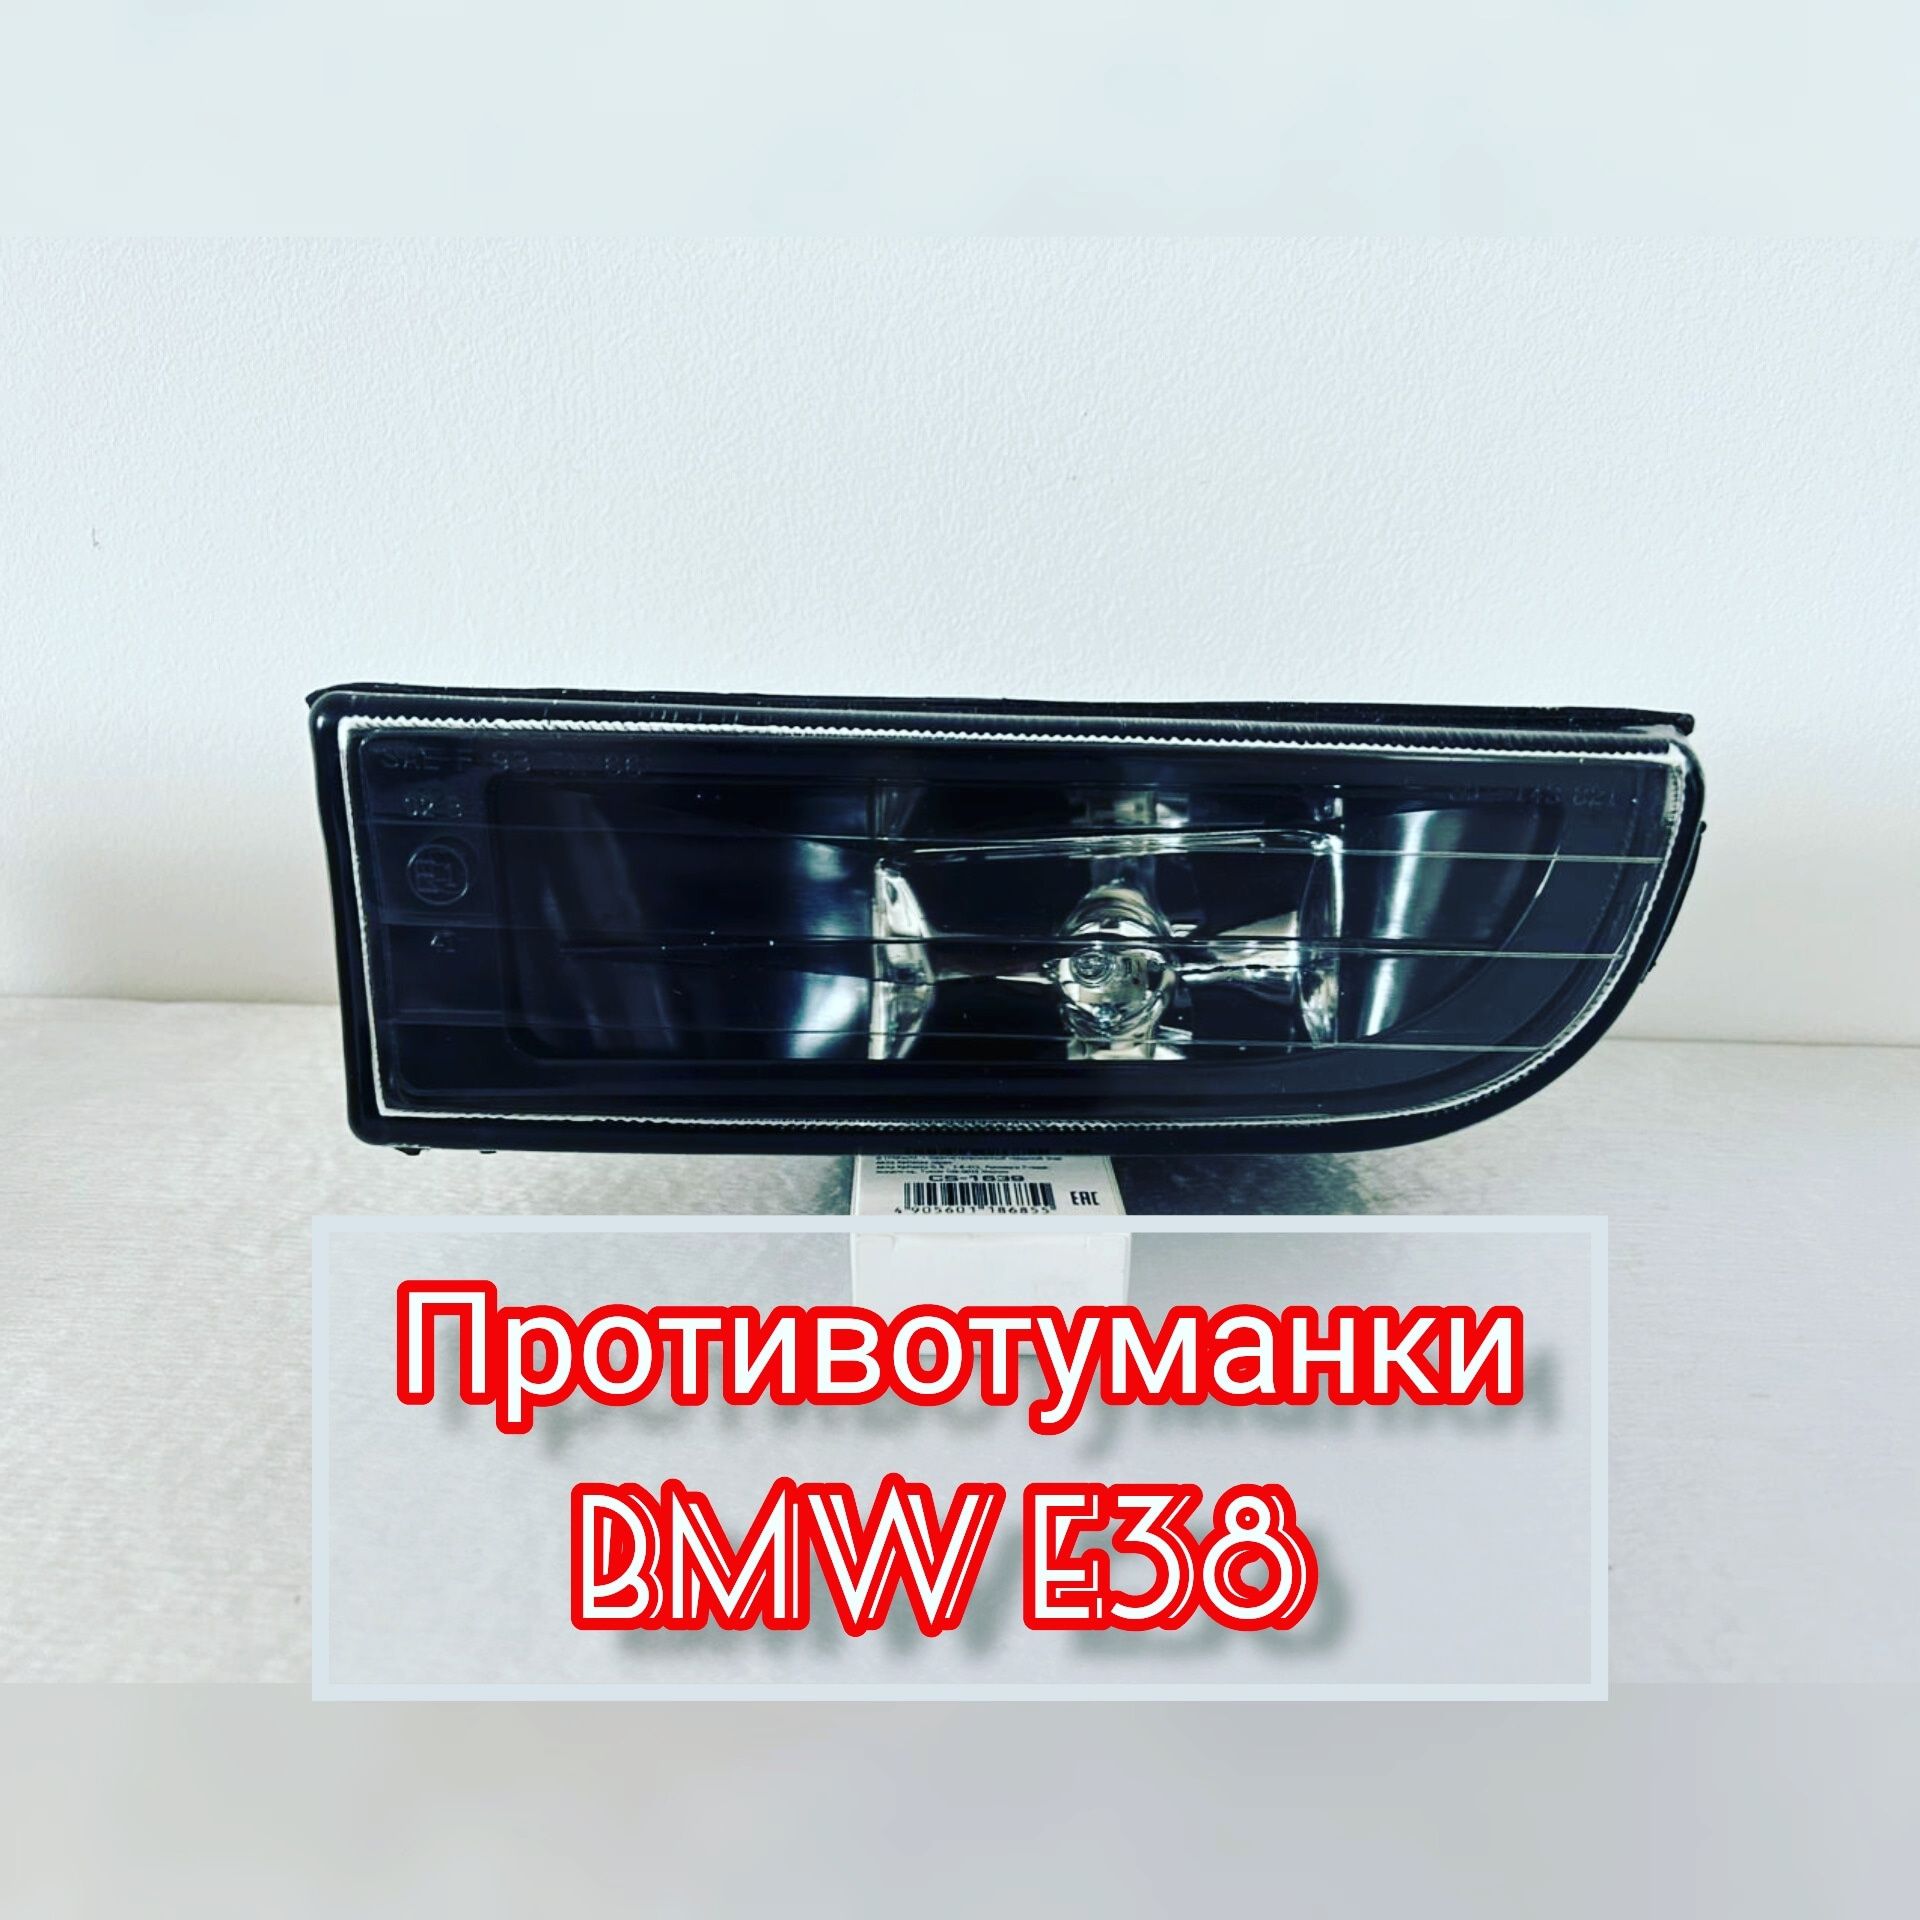 Противотуманки BMW E39, Е39М, Е34, Е36, Е38